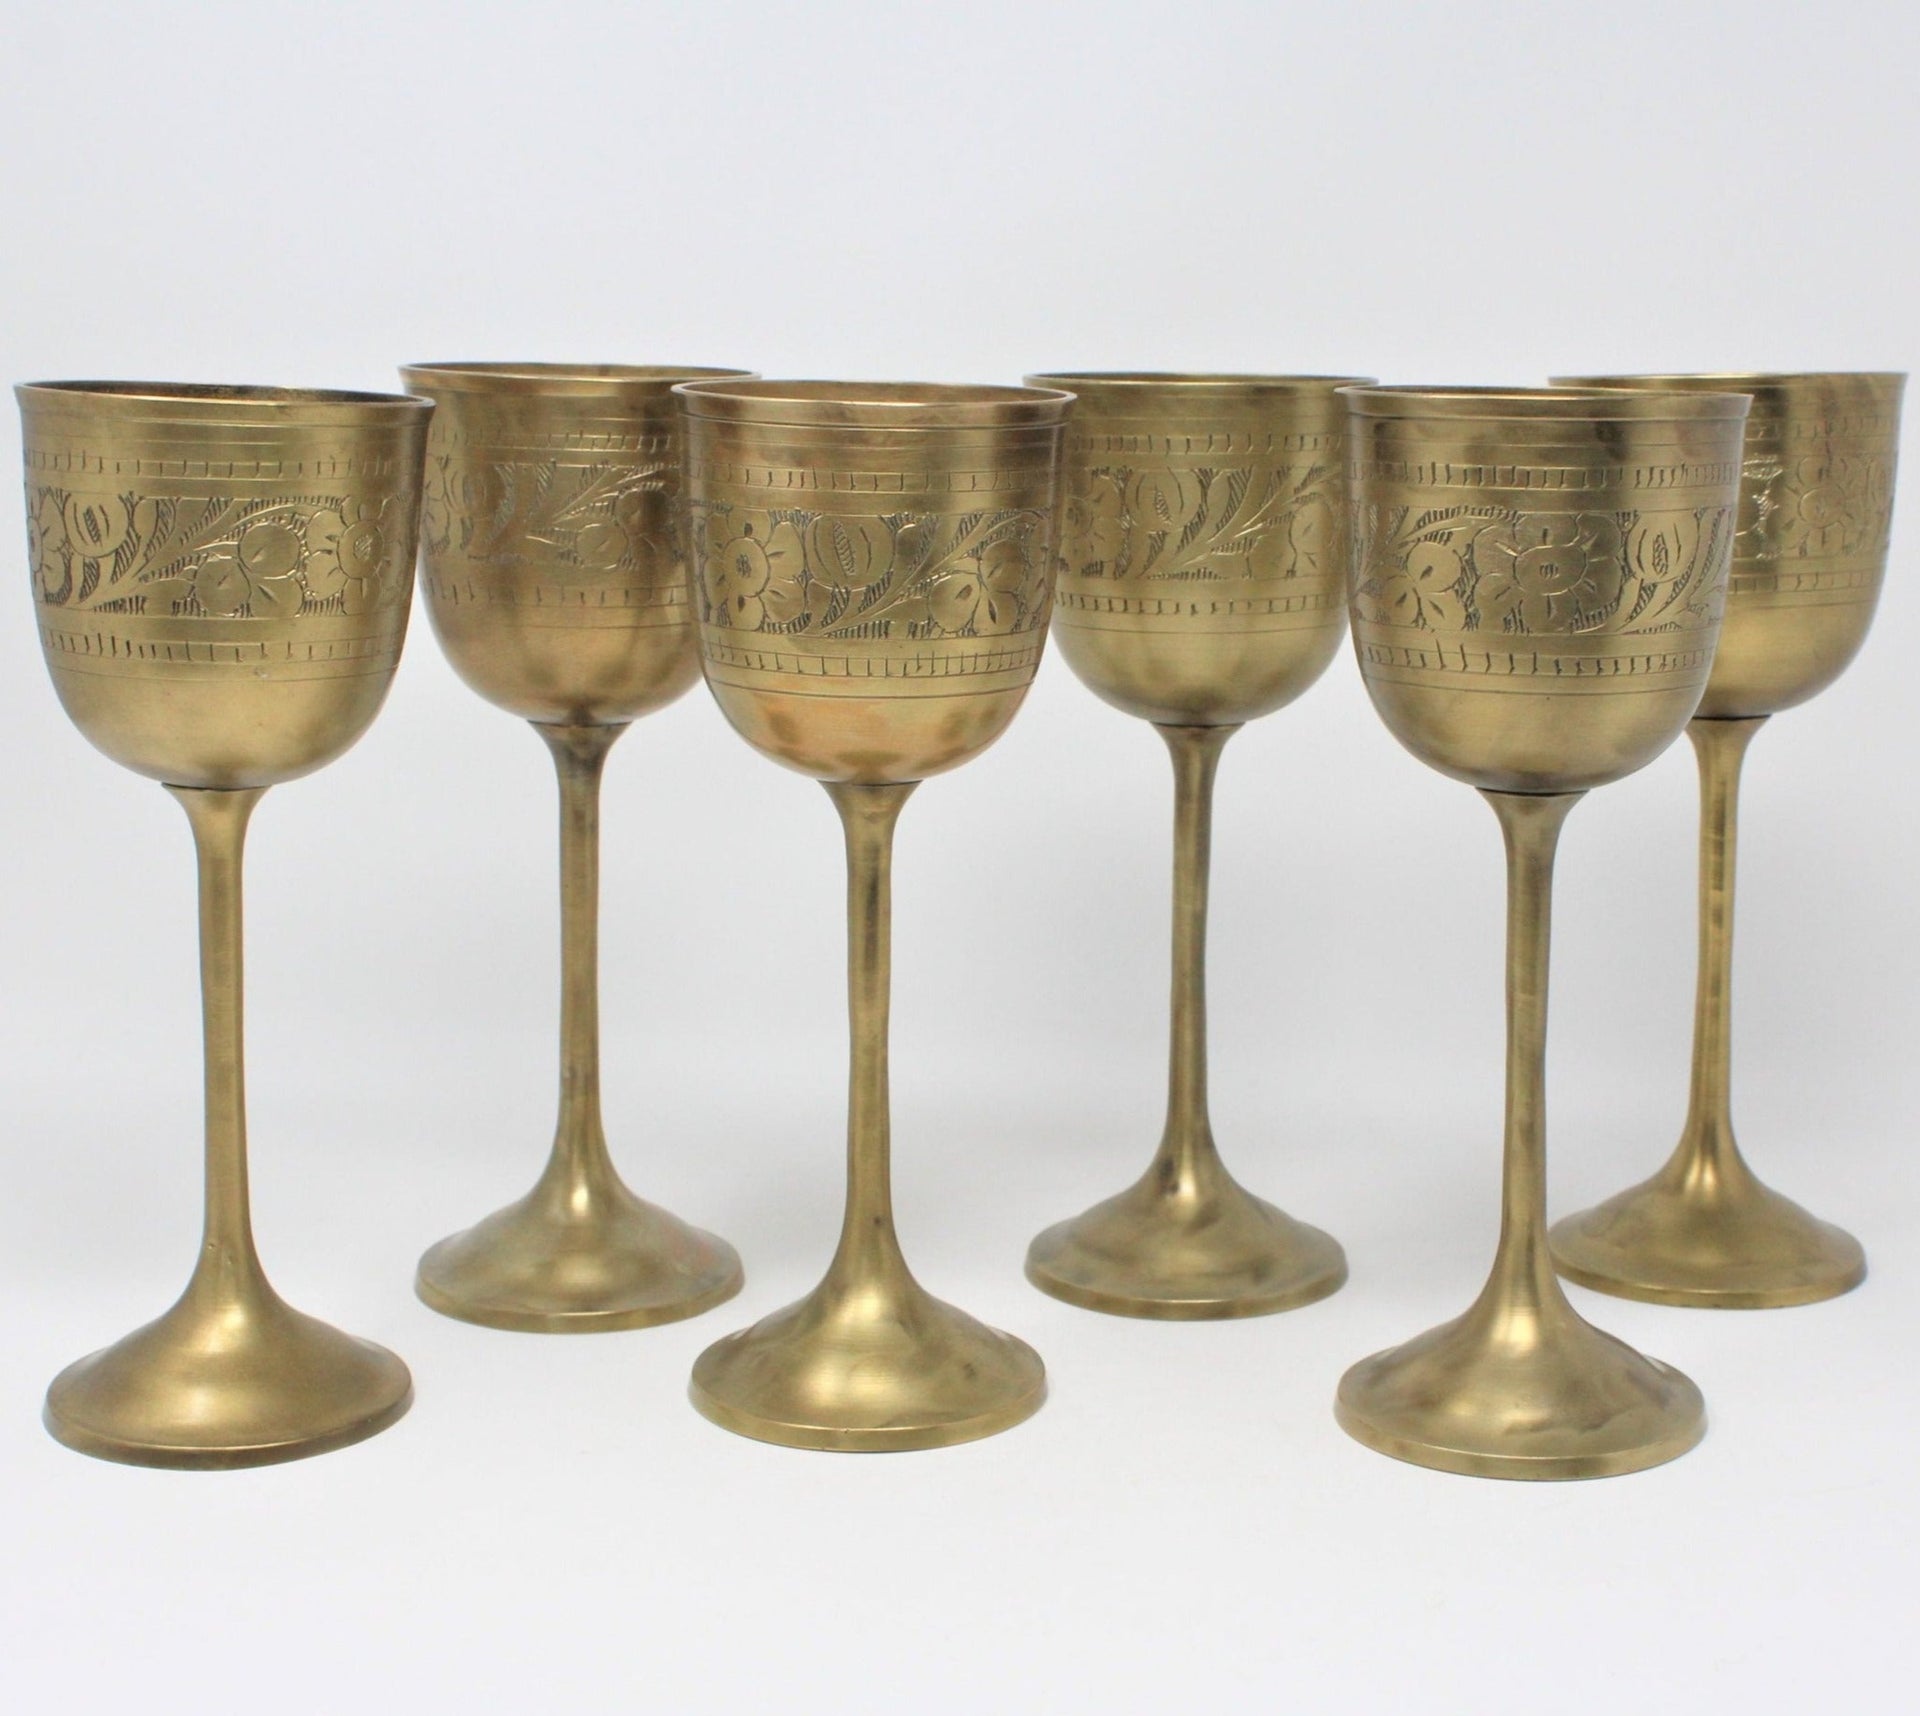 Brass Wine Goblet Chalice Vintage Fantasy Embossed Glasses at Rs